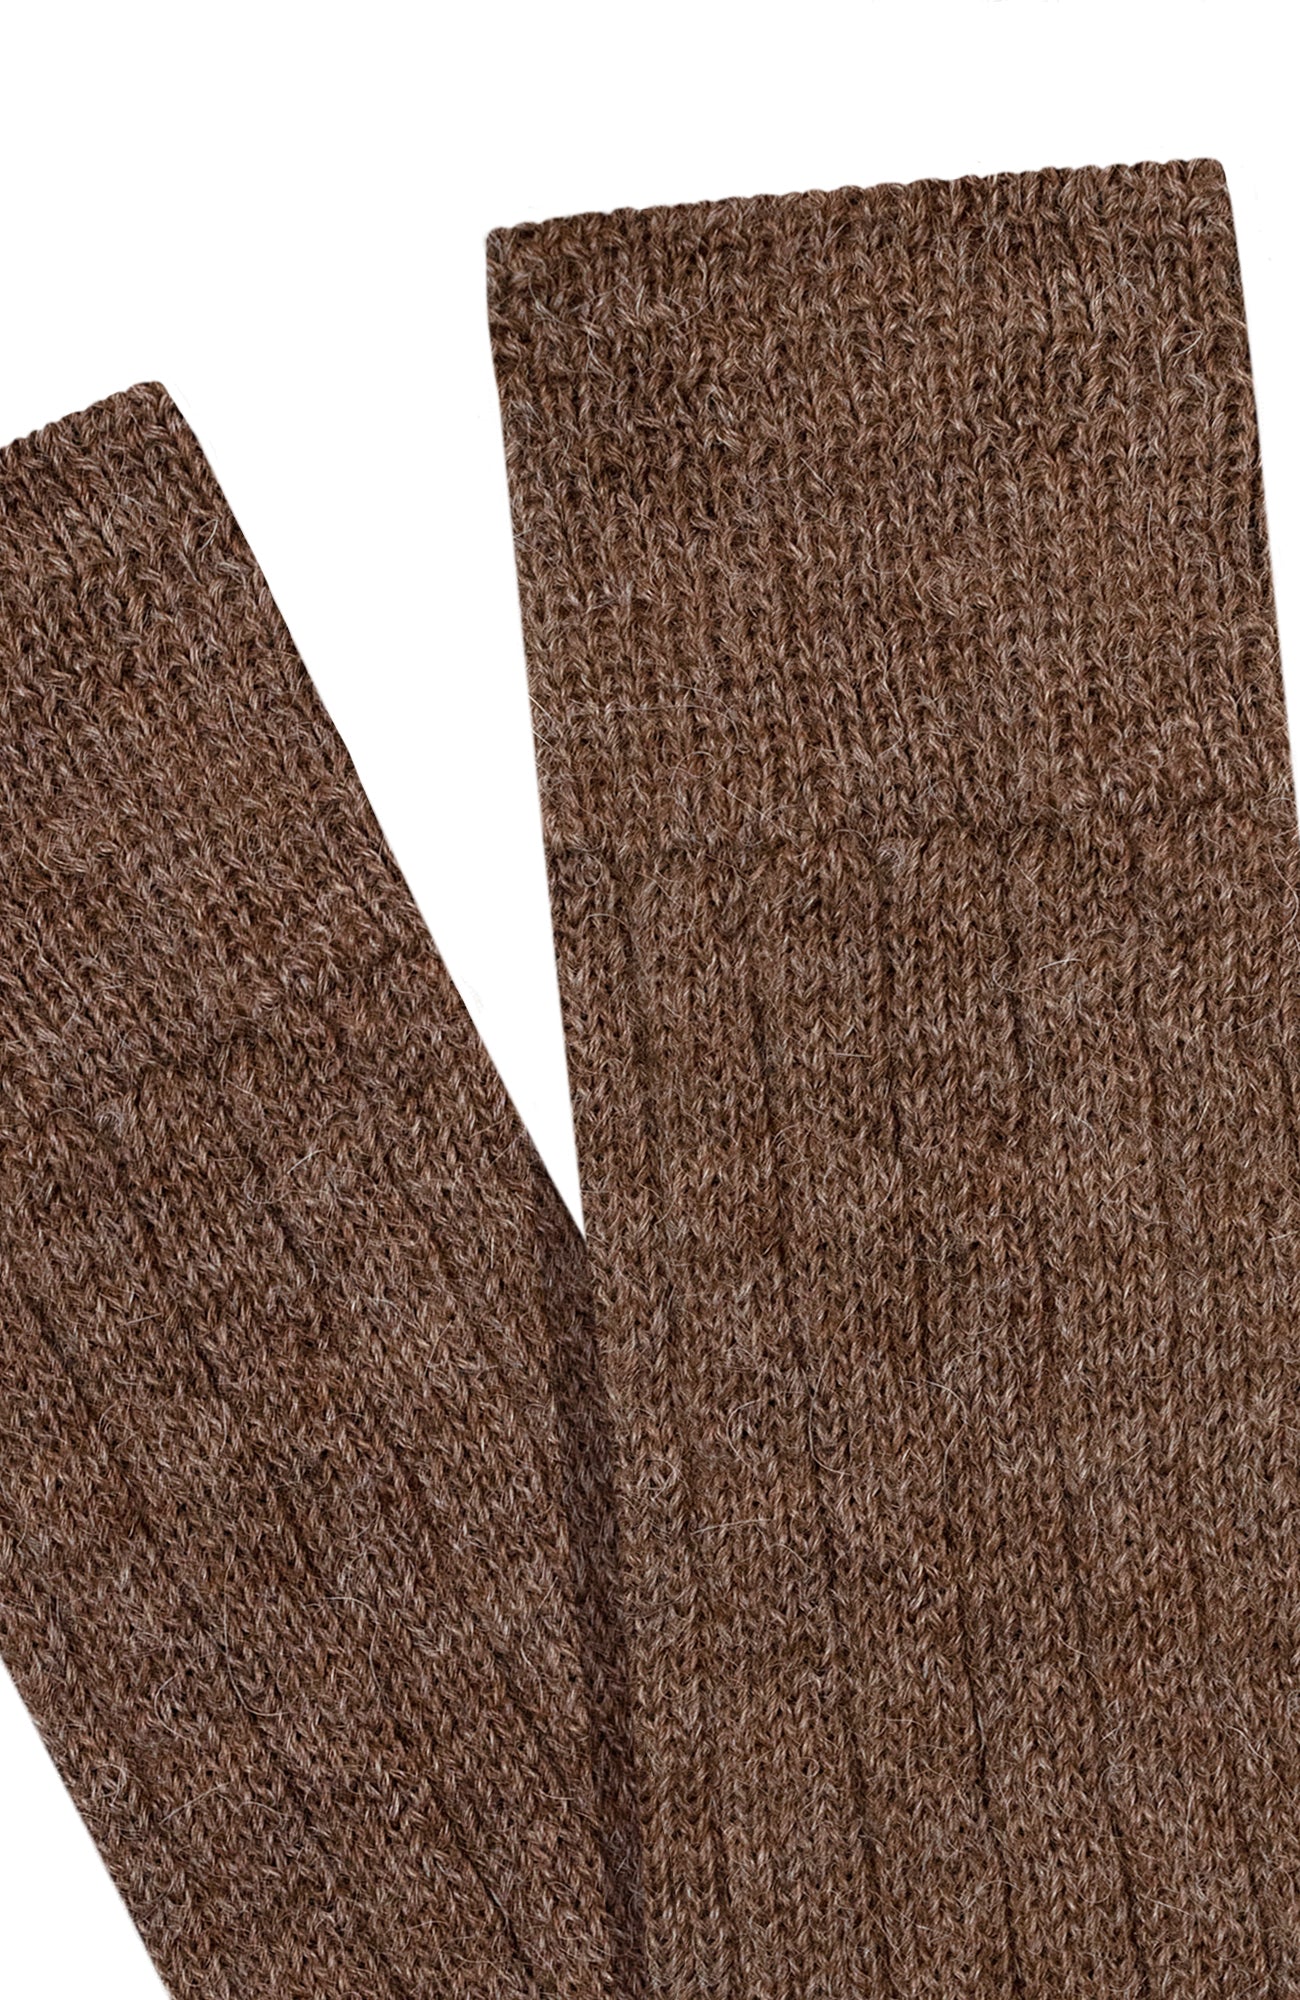 brown alpaca bed socks